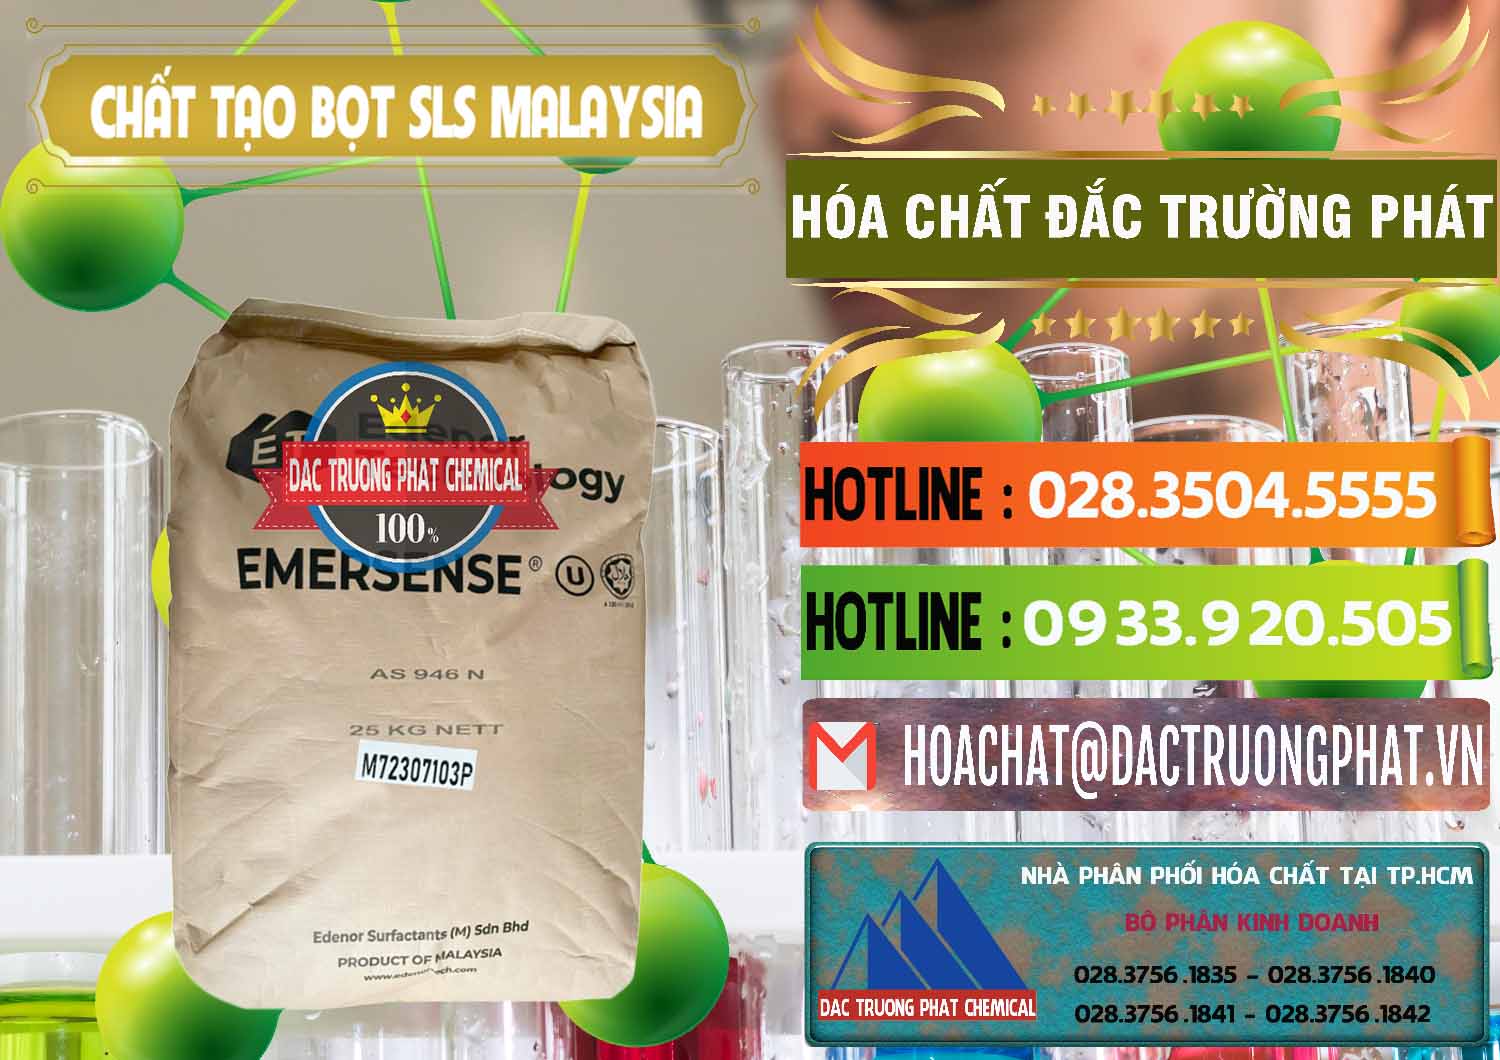 Nơi chuyên cung ứng & bán Chất Tạo Bọt SLS Emersense Mã Lai Malaysia - 0381 - Chuyên phân phối ( cung ứng ) hóa chất tại TP.HCM - cungcaphoachat.com.vn